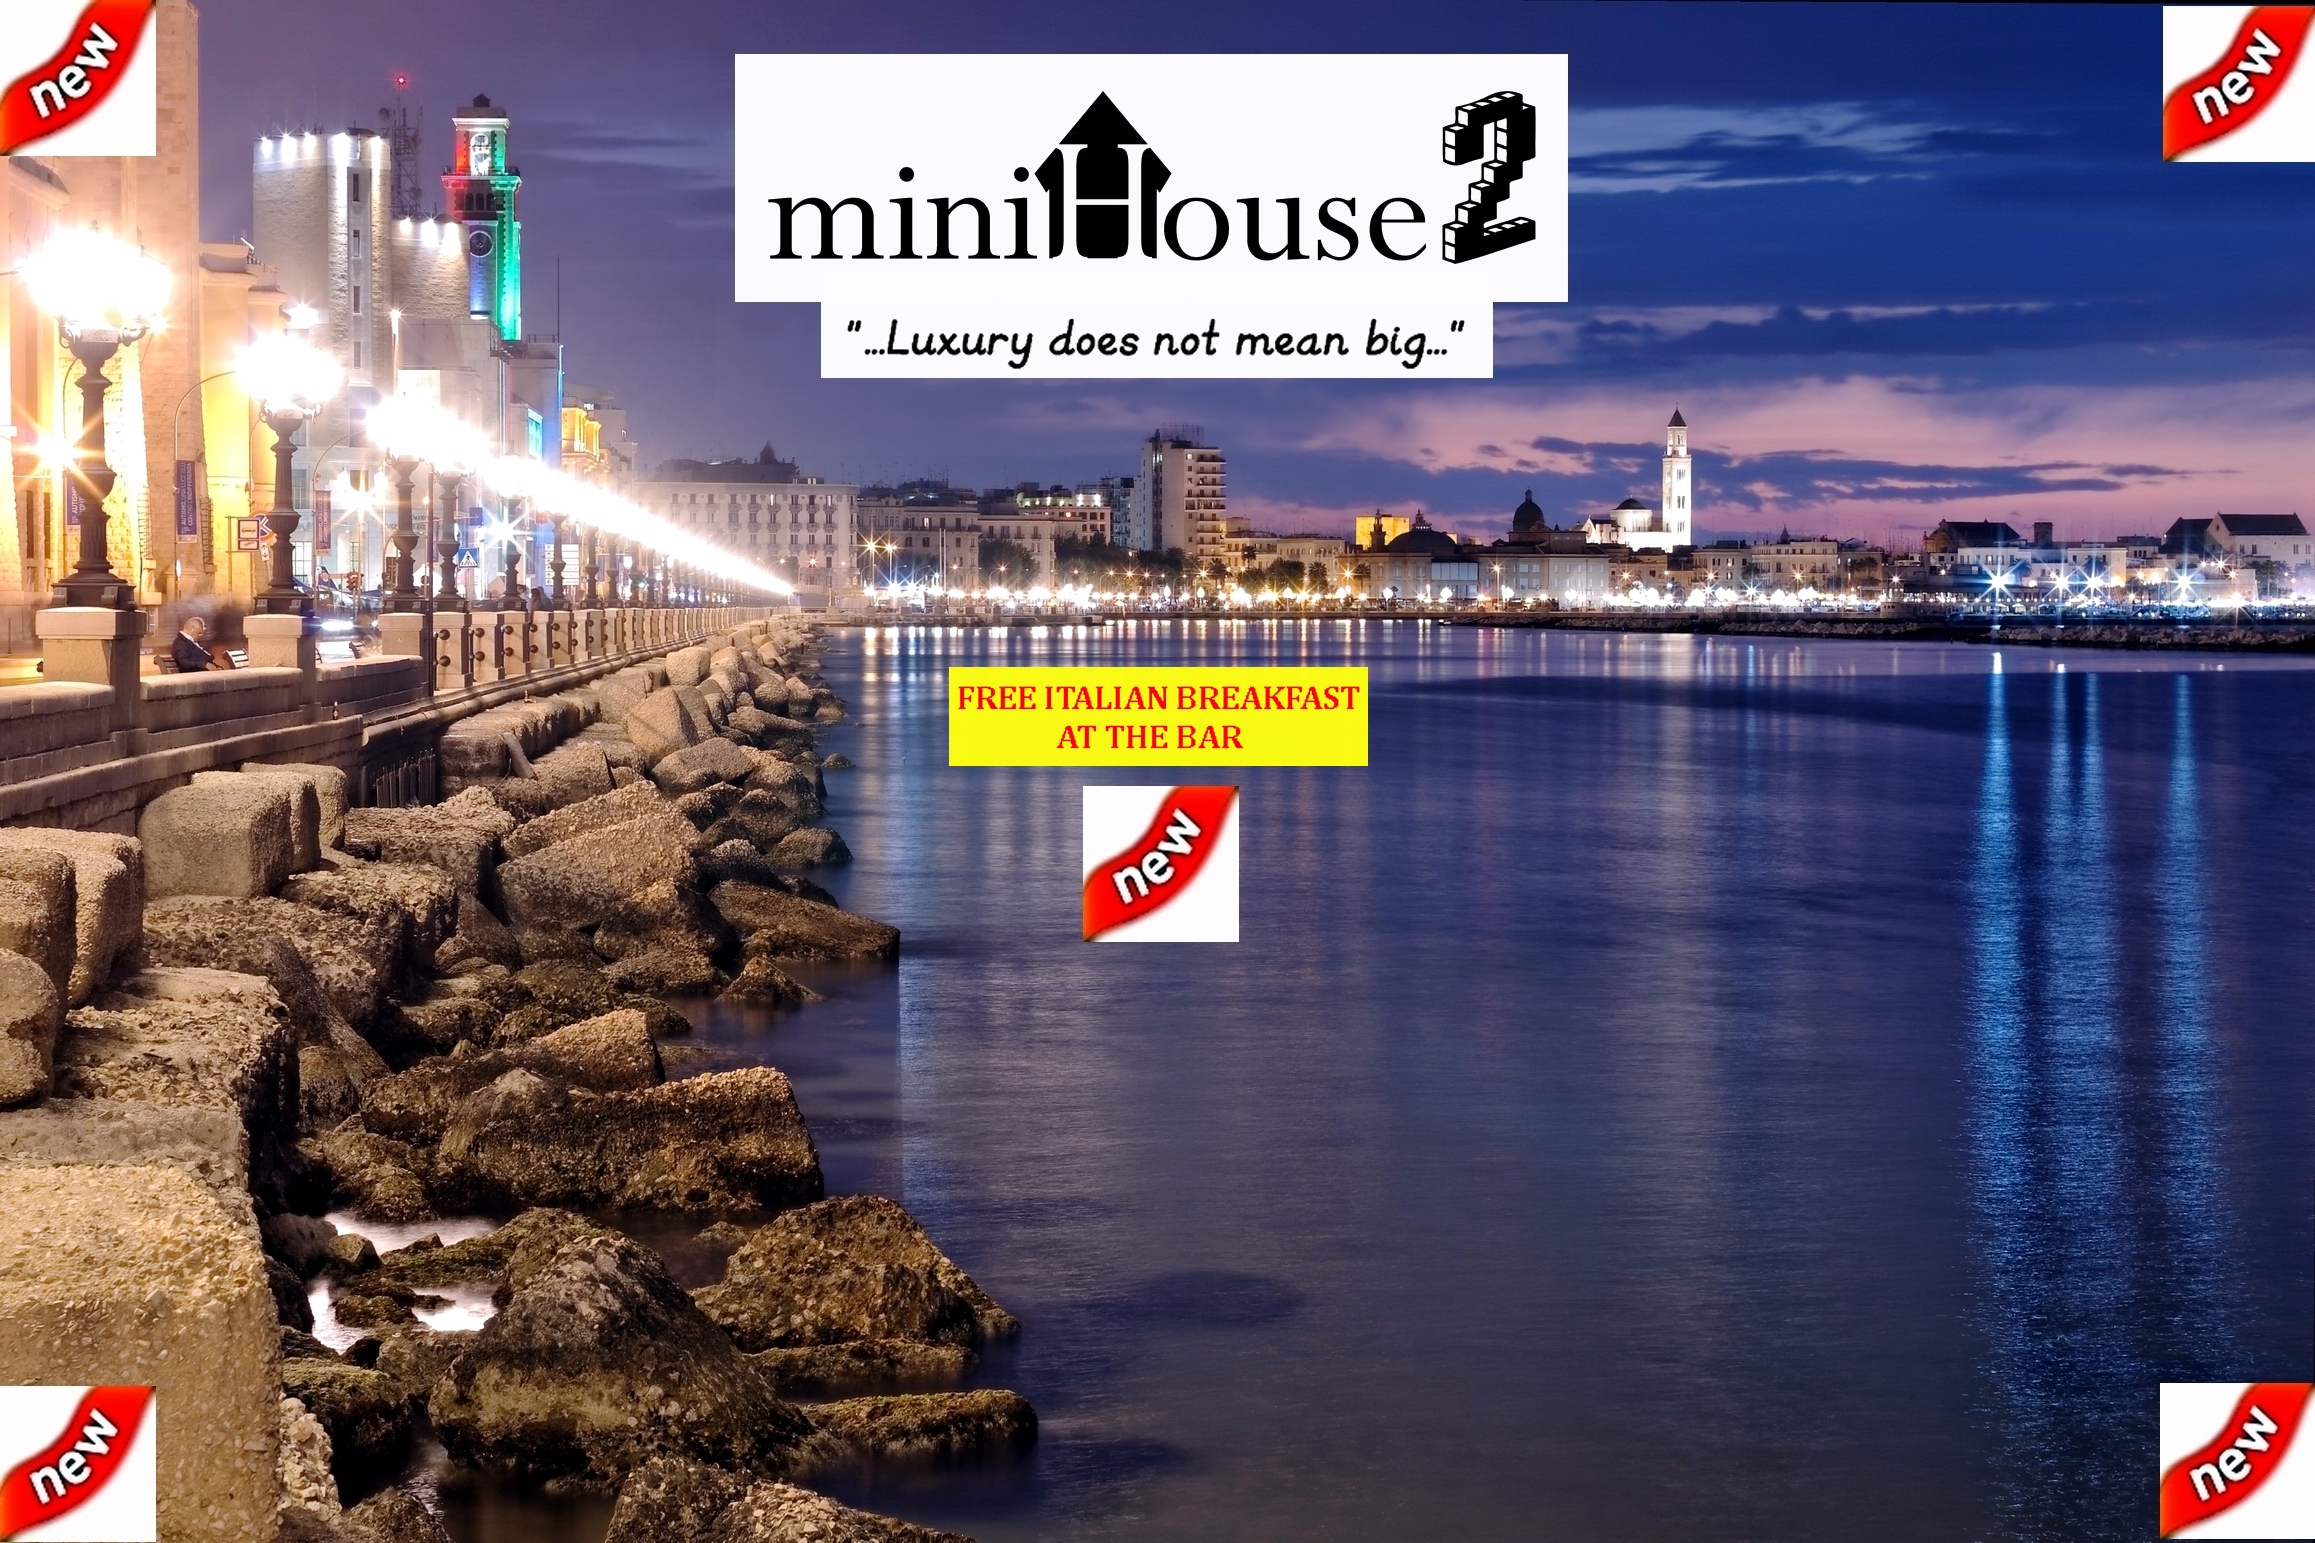 Minihouse2 - Bari